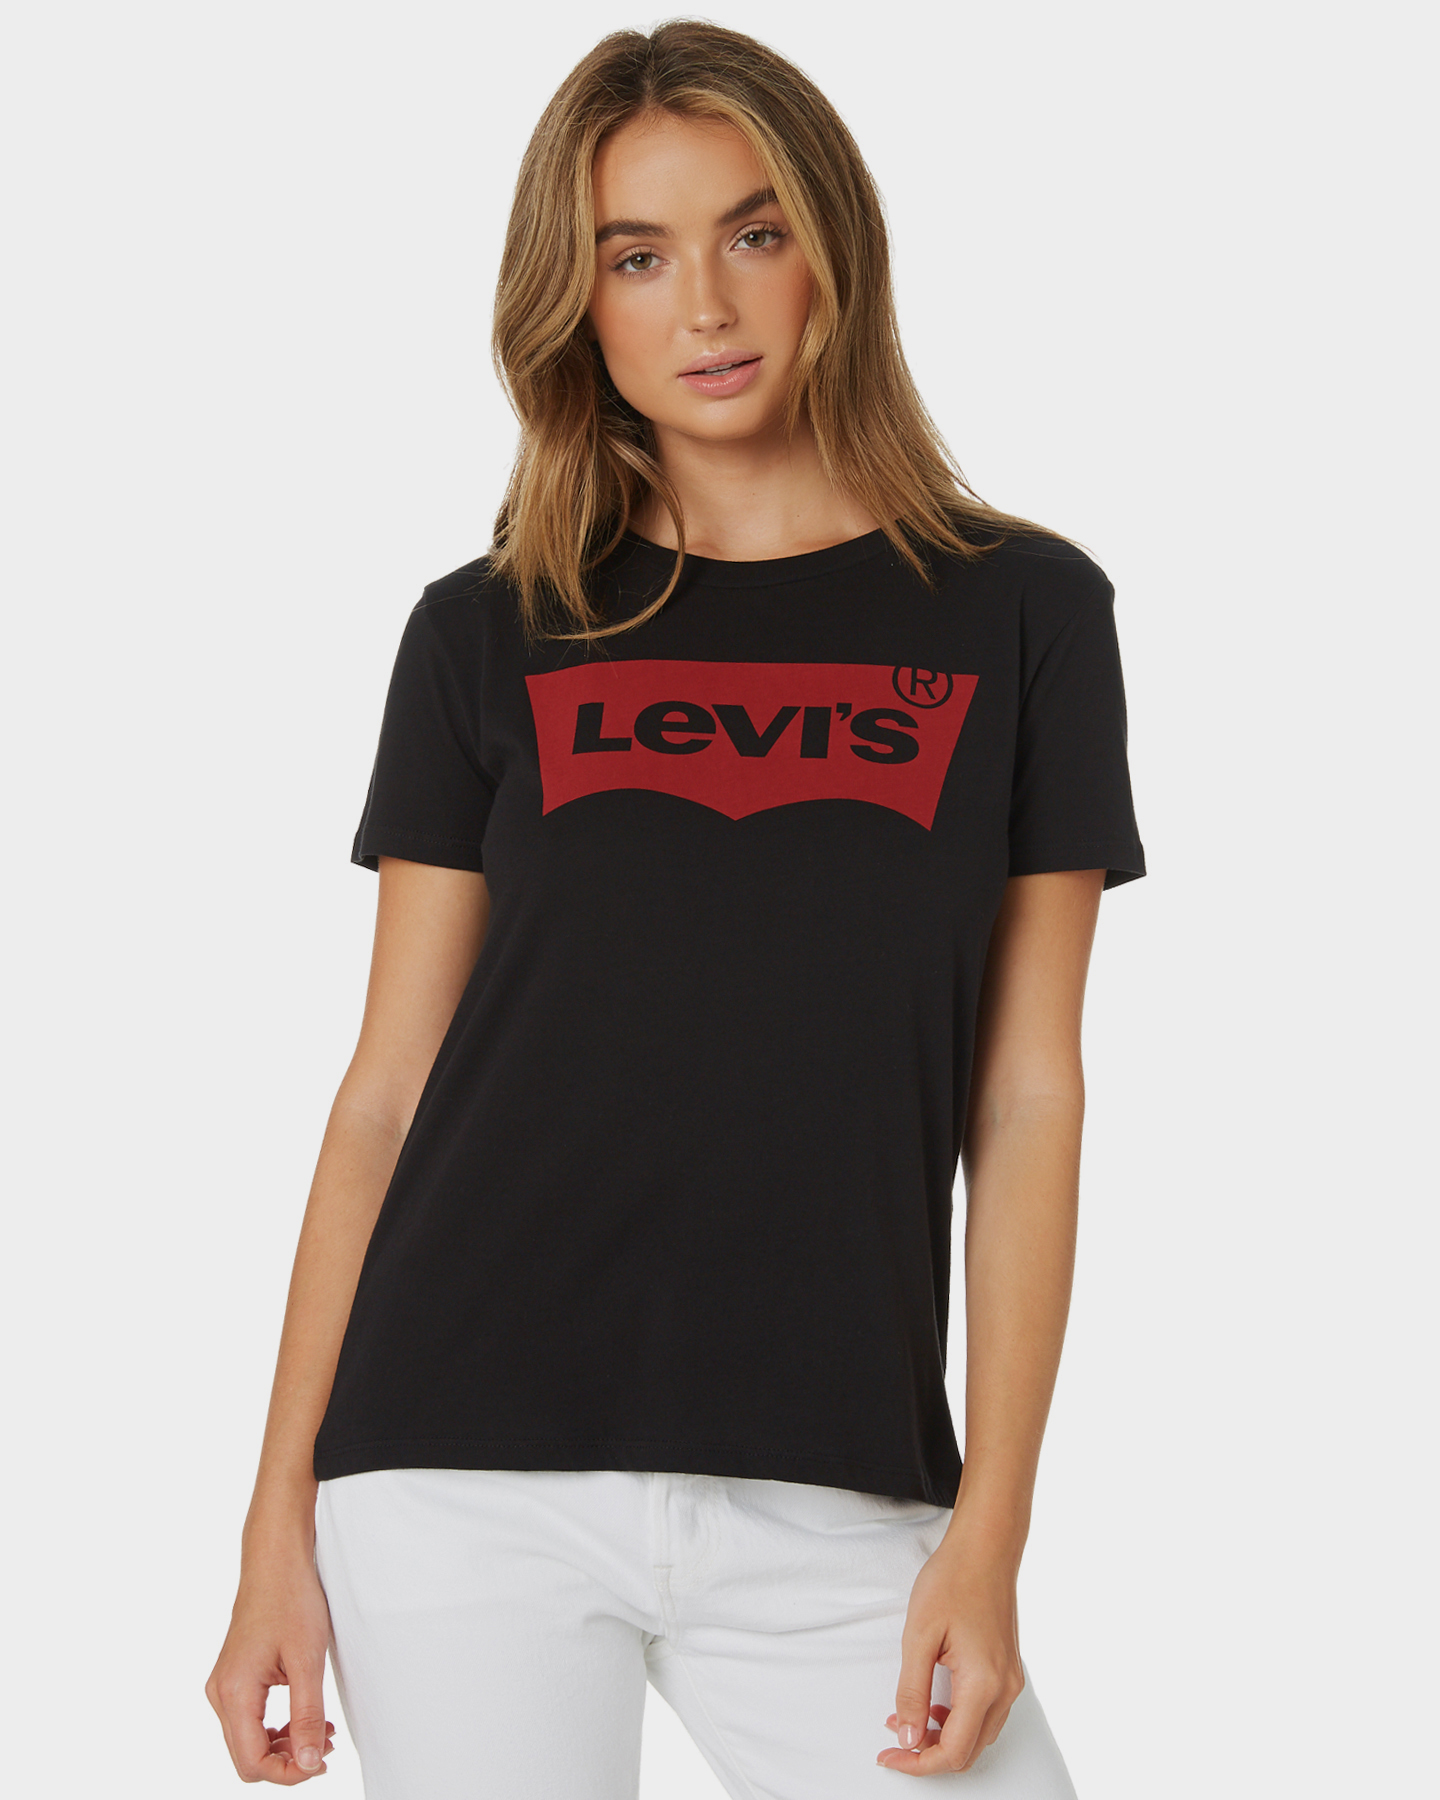 levi t shirt women's black